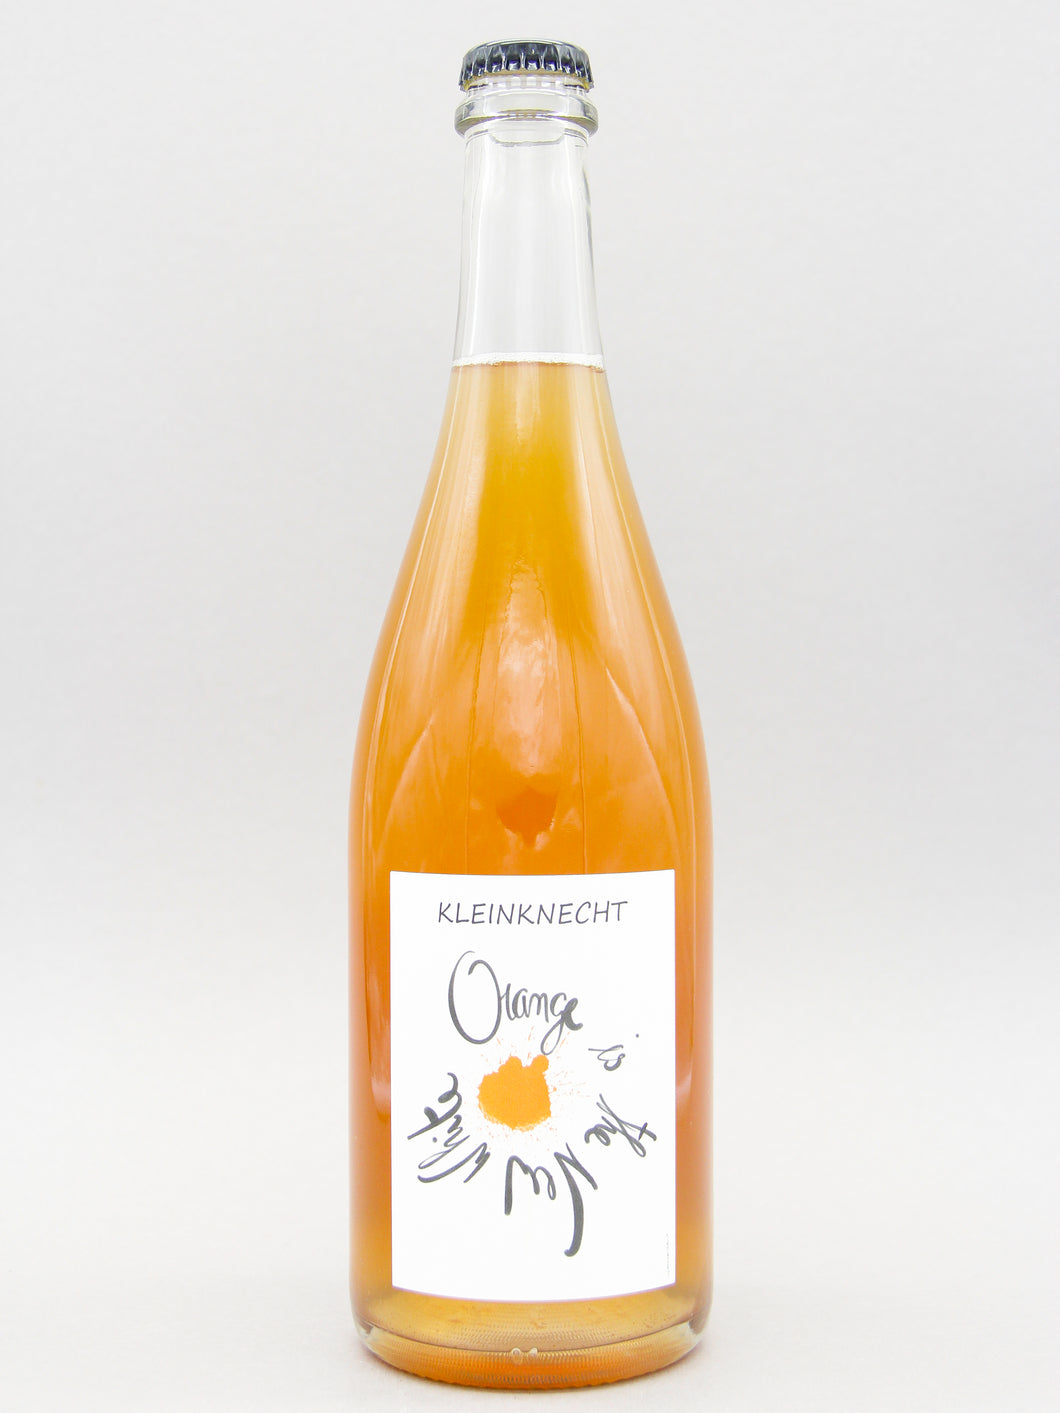 Domaine Kleinknecht, Orange is the new white, Orange Wine 2020 (14%, 75cl)